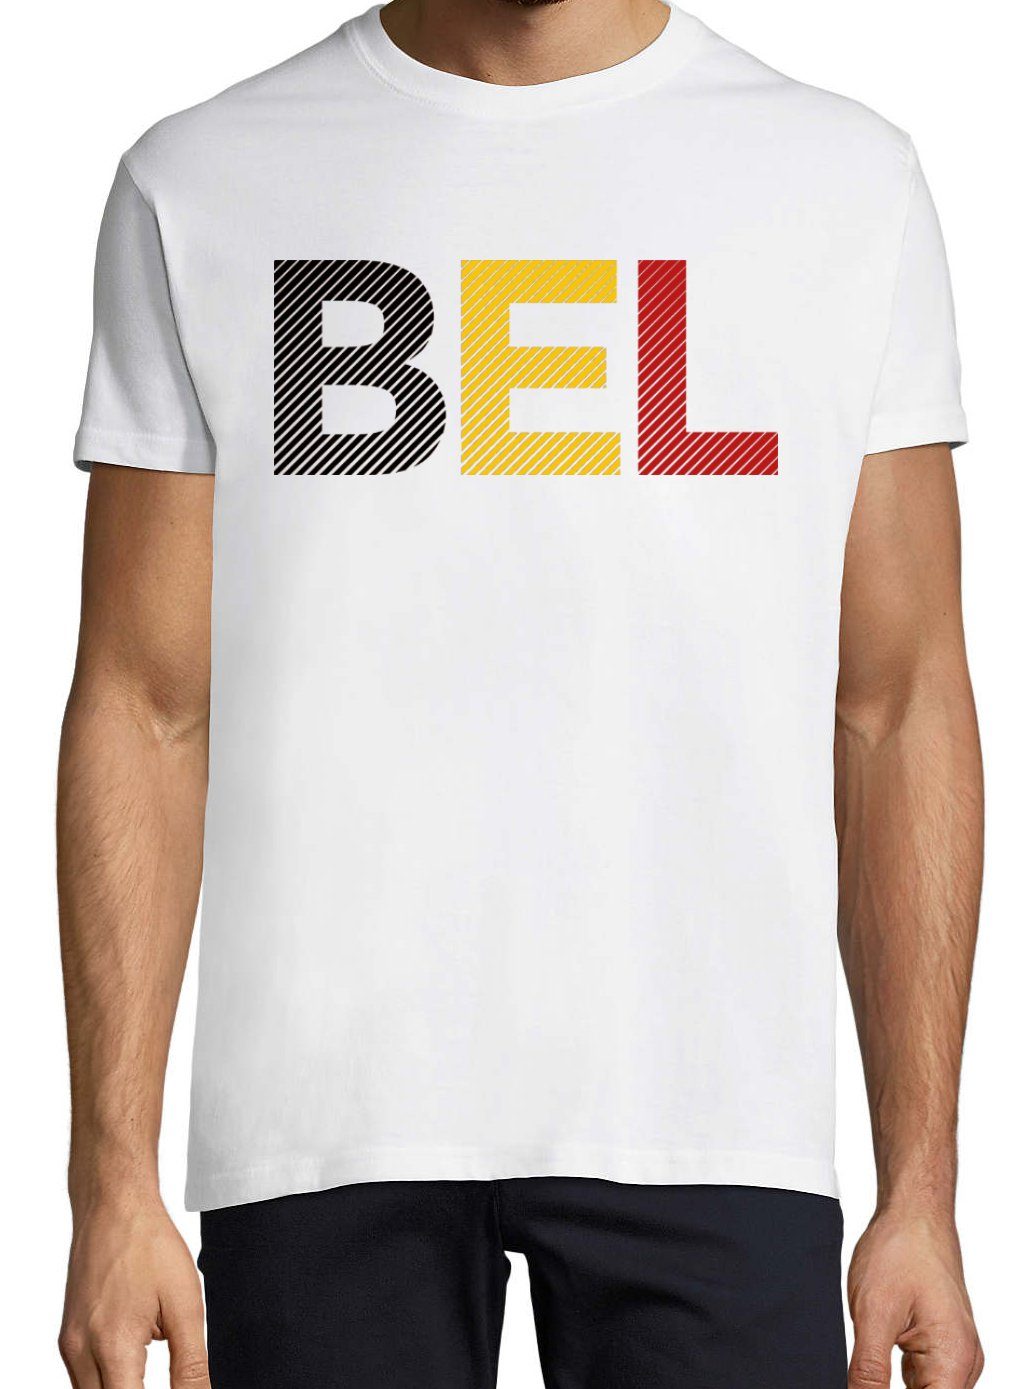 Frontdruck Fußball Belgien mit Trendigem Youth T-Shirt Herren Designz T-Shirt im Look Weiss